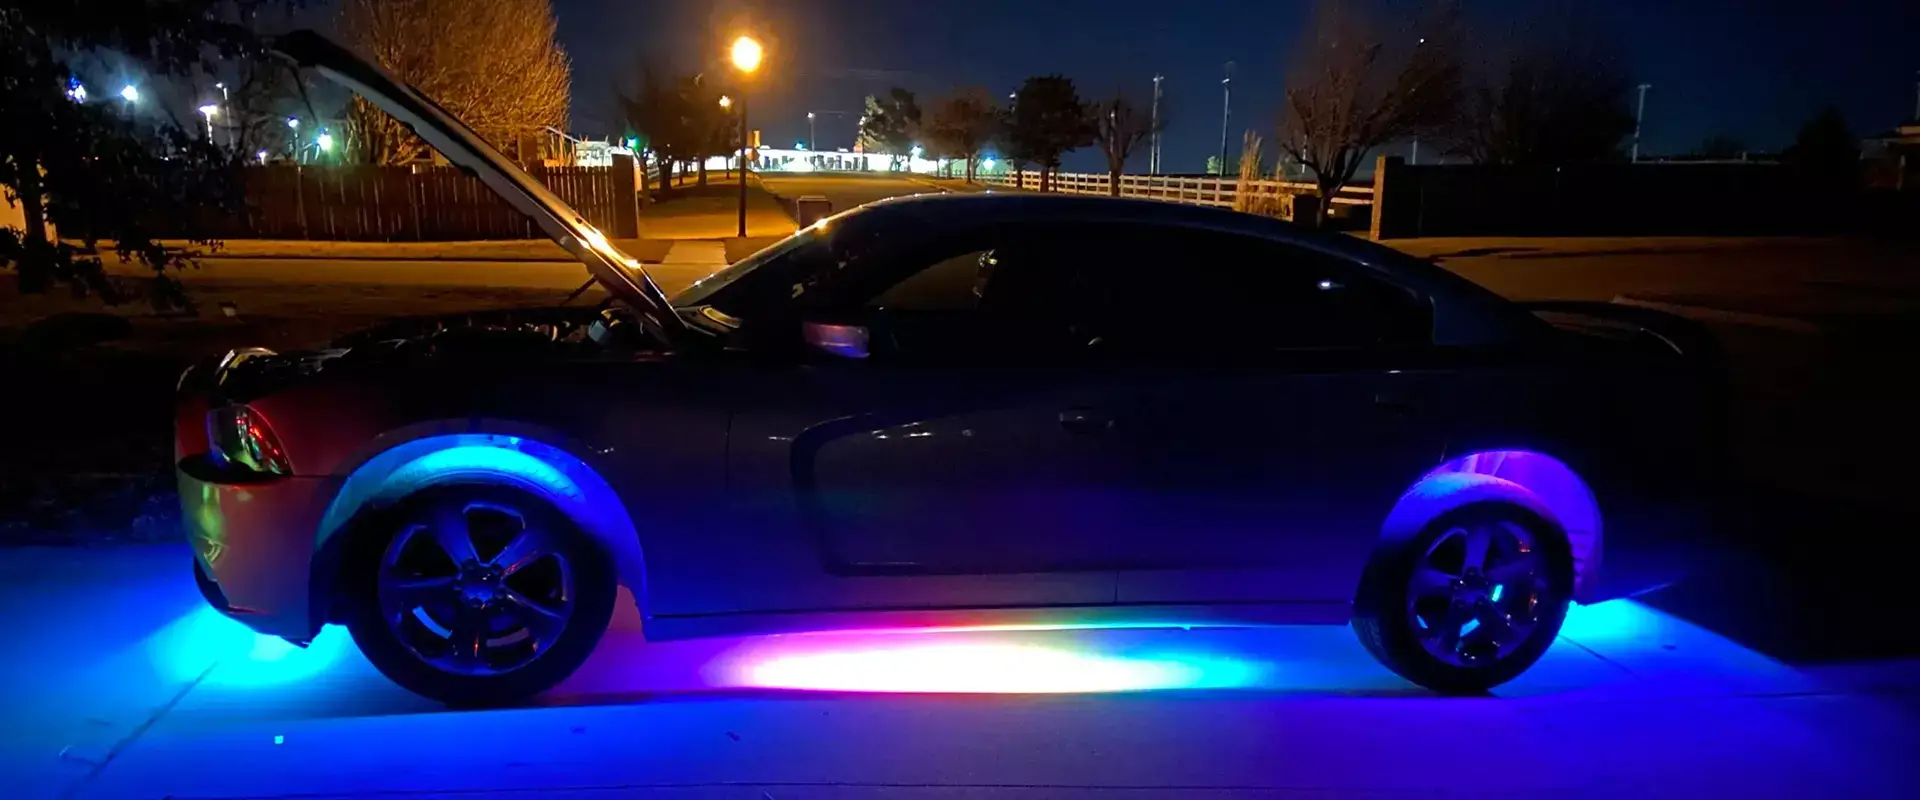 LED strip for vehicle lighting